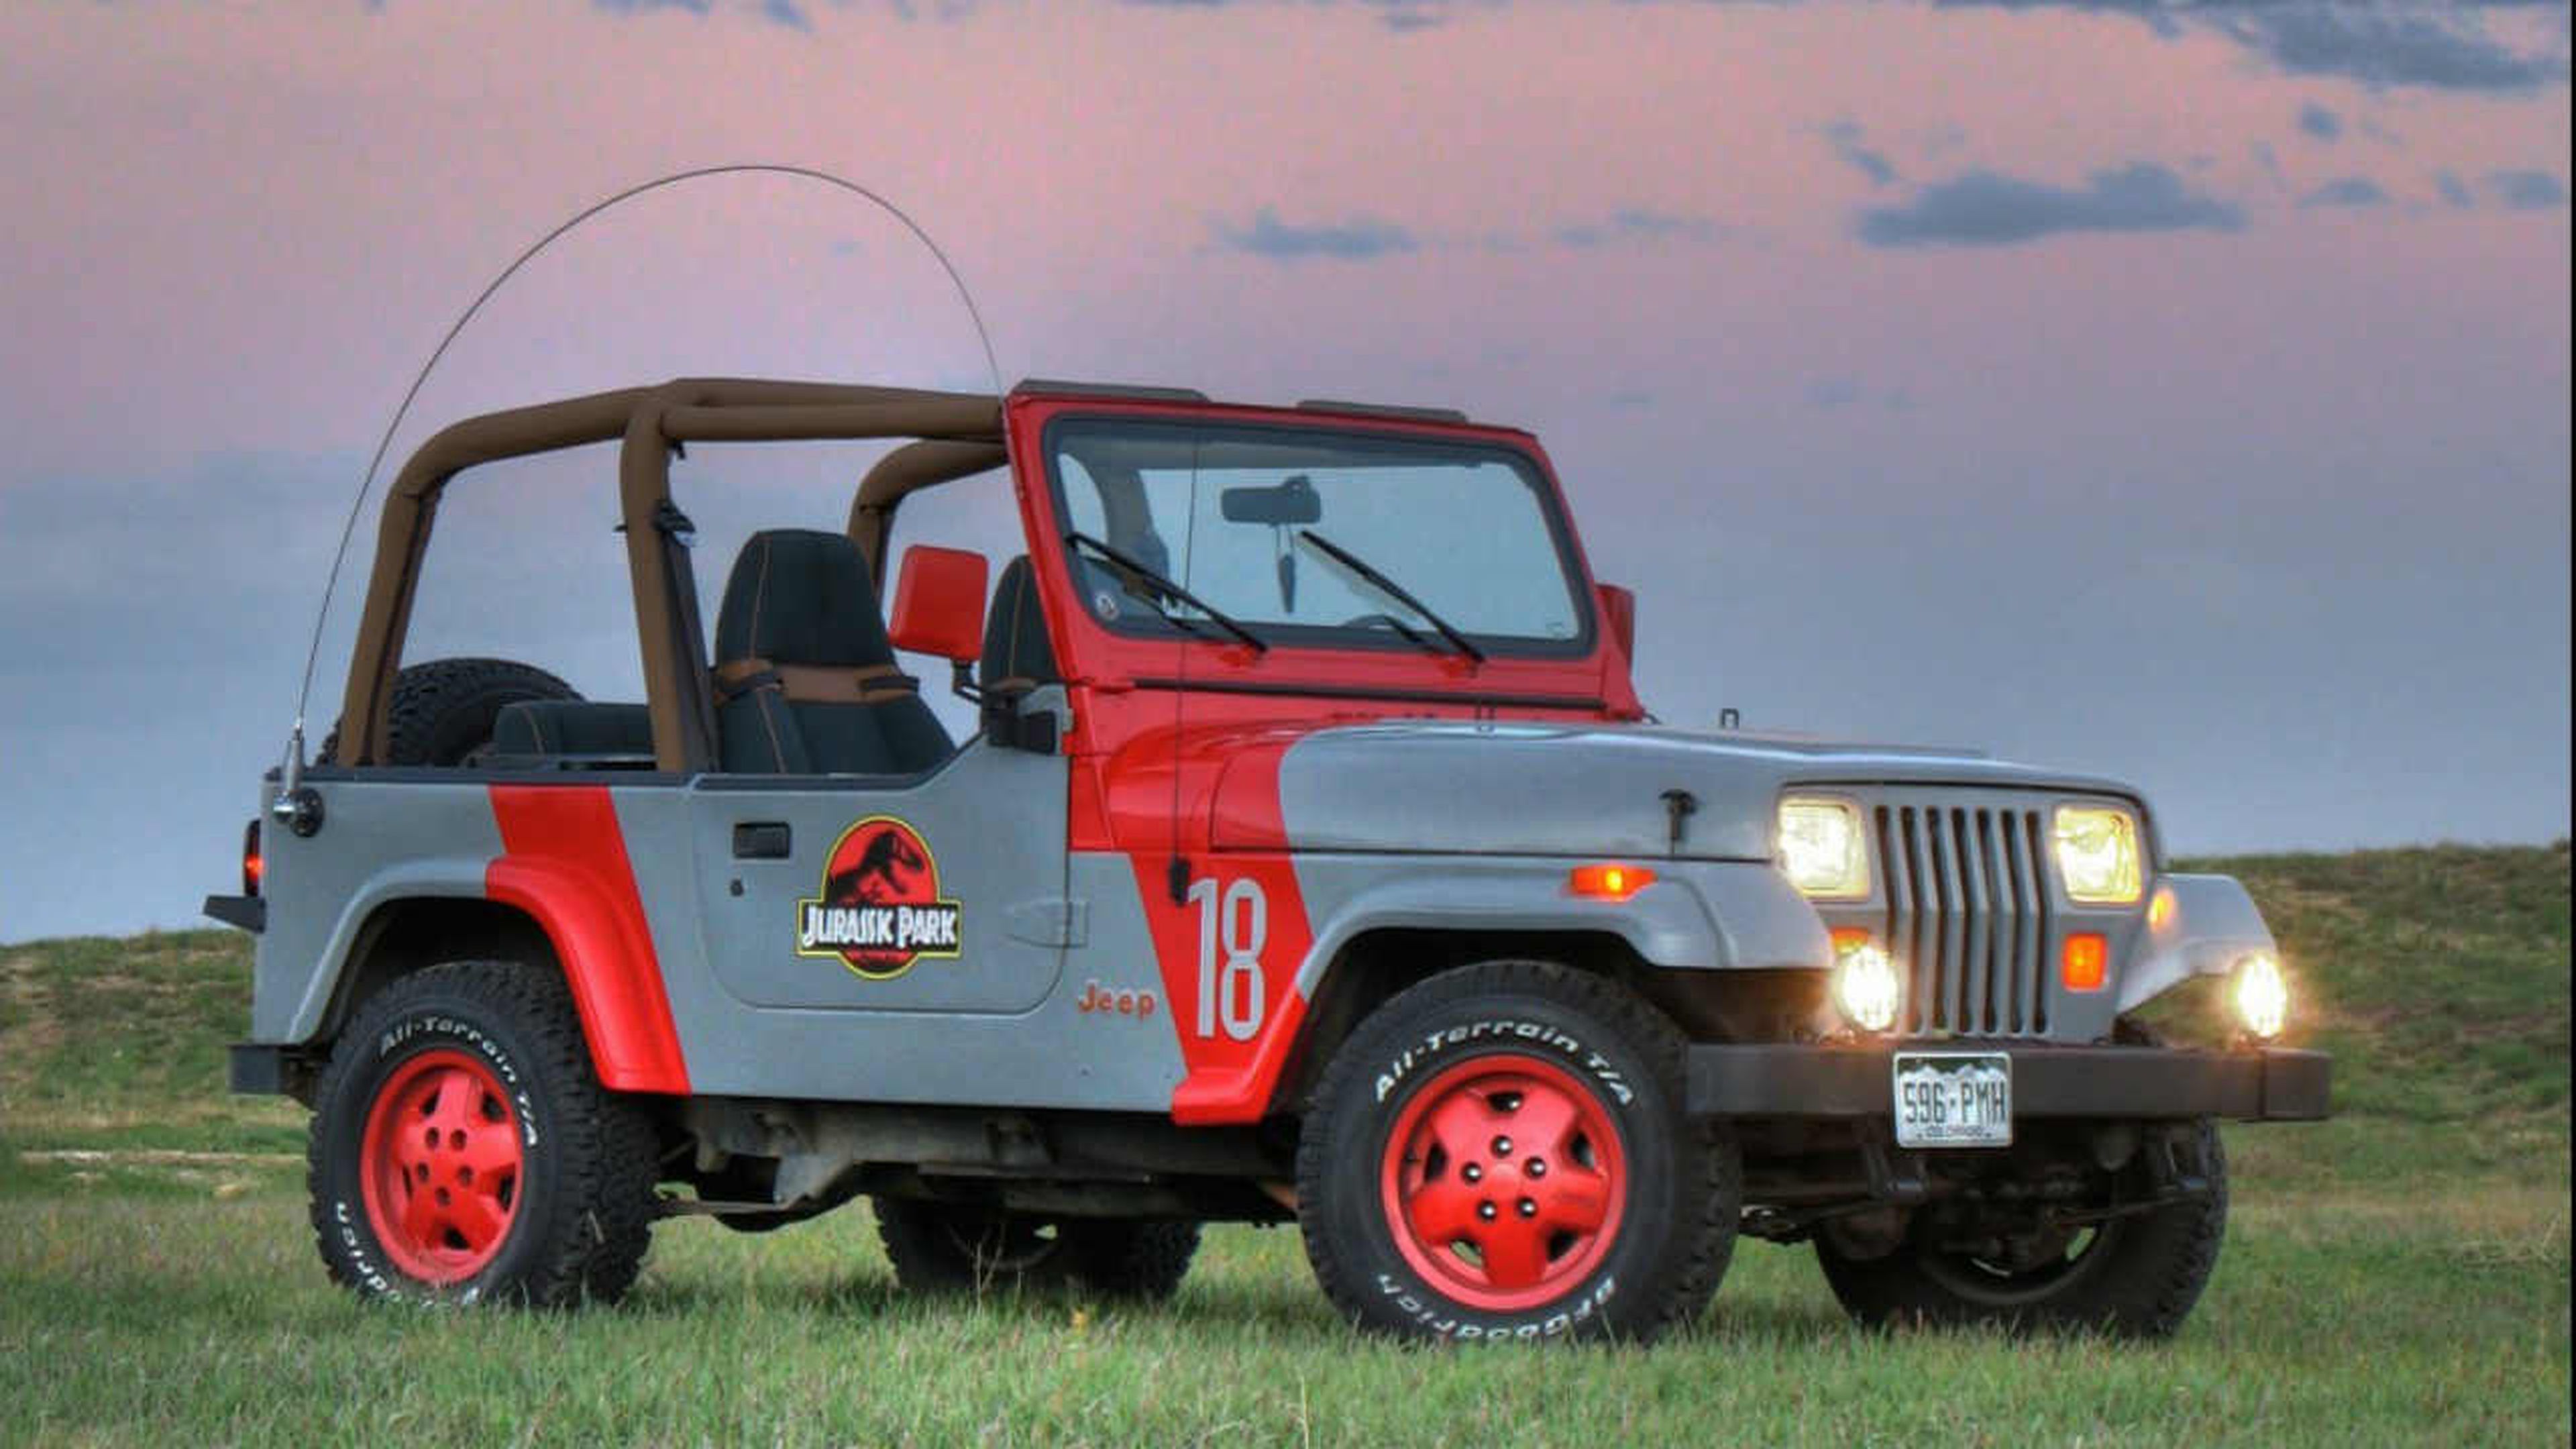 Jeep Jurassic Park